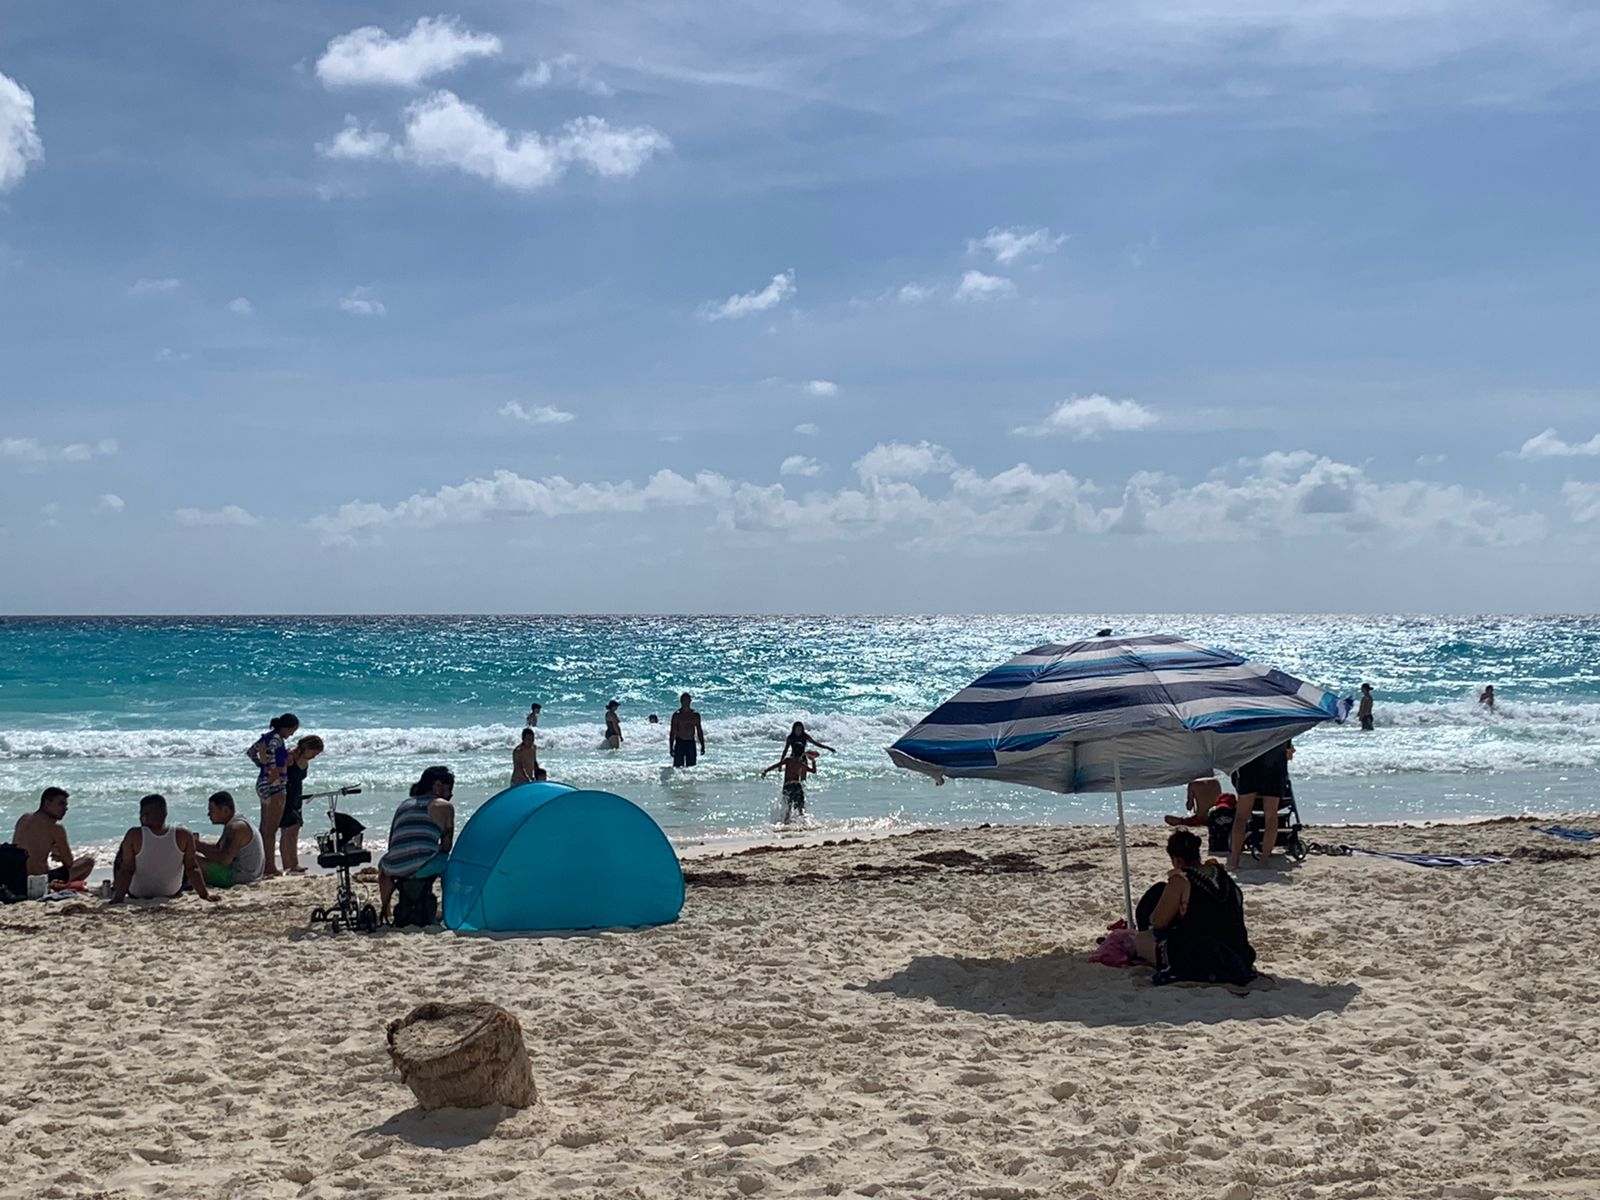 Playa Gaviota Azul en Cancún registra buena afluencia de visitantes: EN VIVO